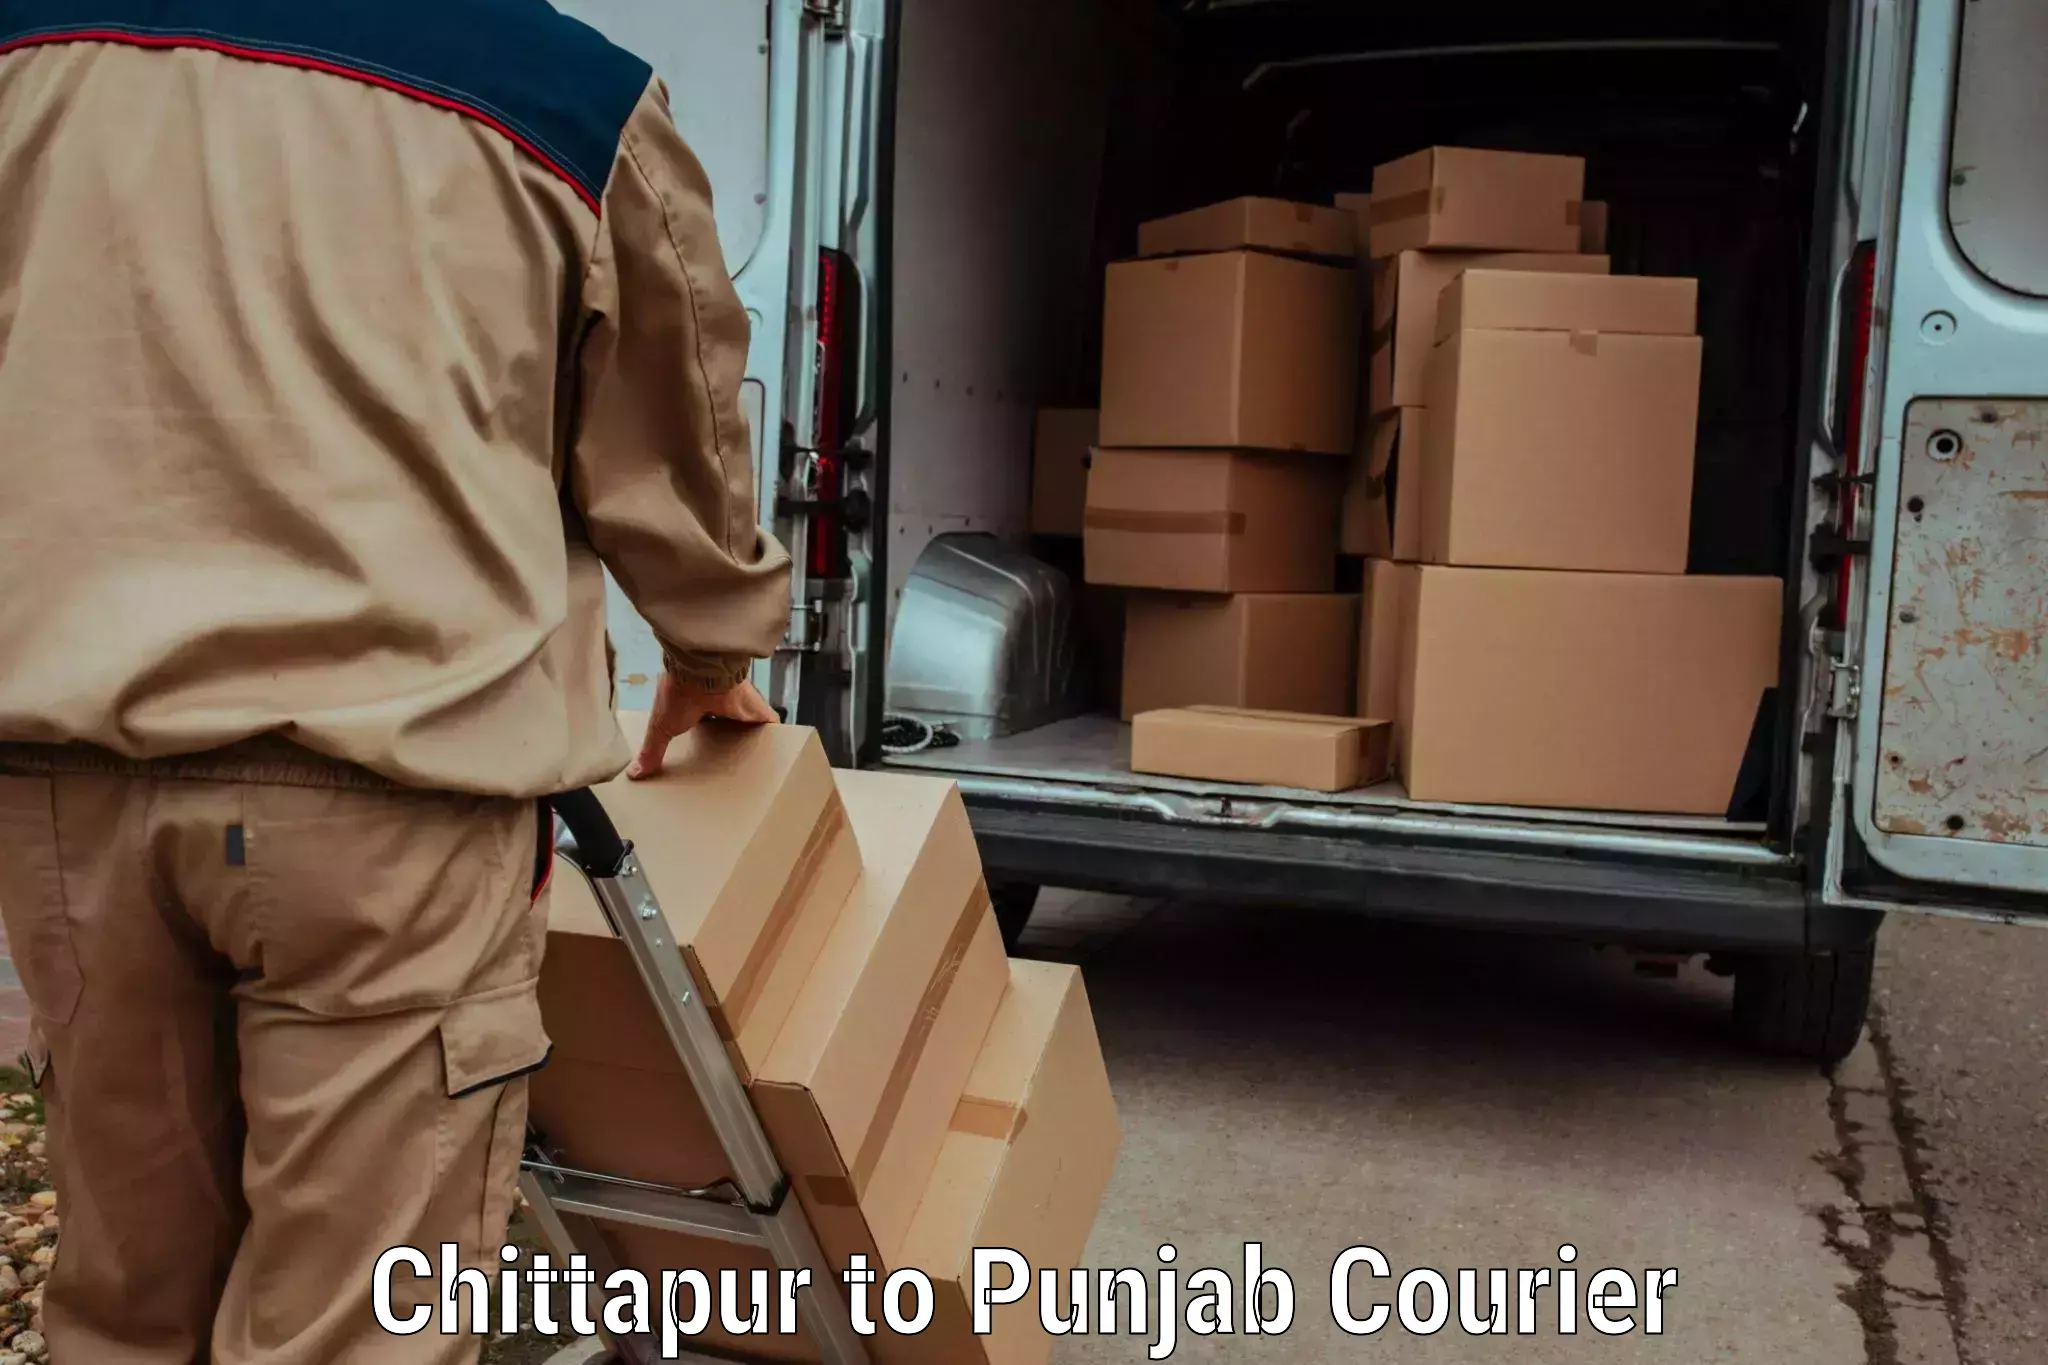 Efficient freight service Chittapur to Sirhind Fatehgarh